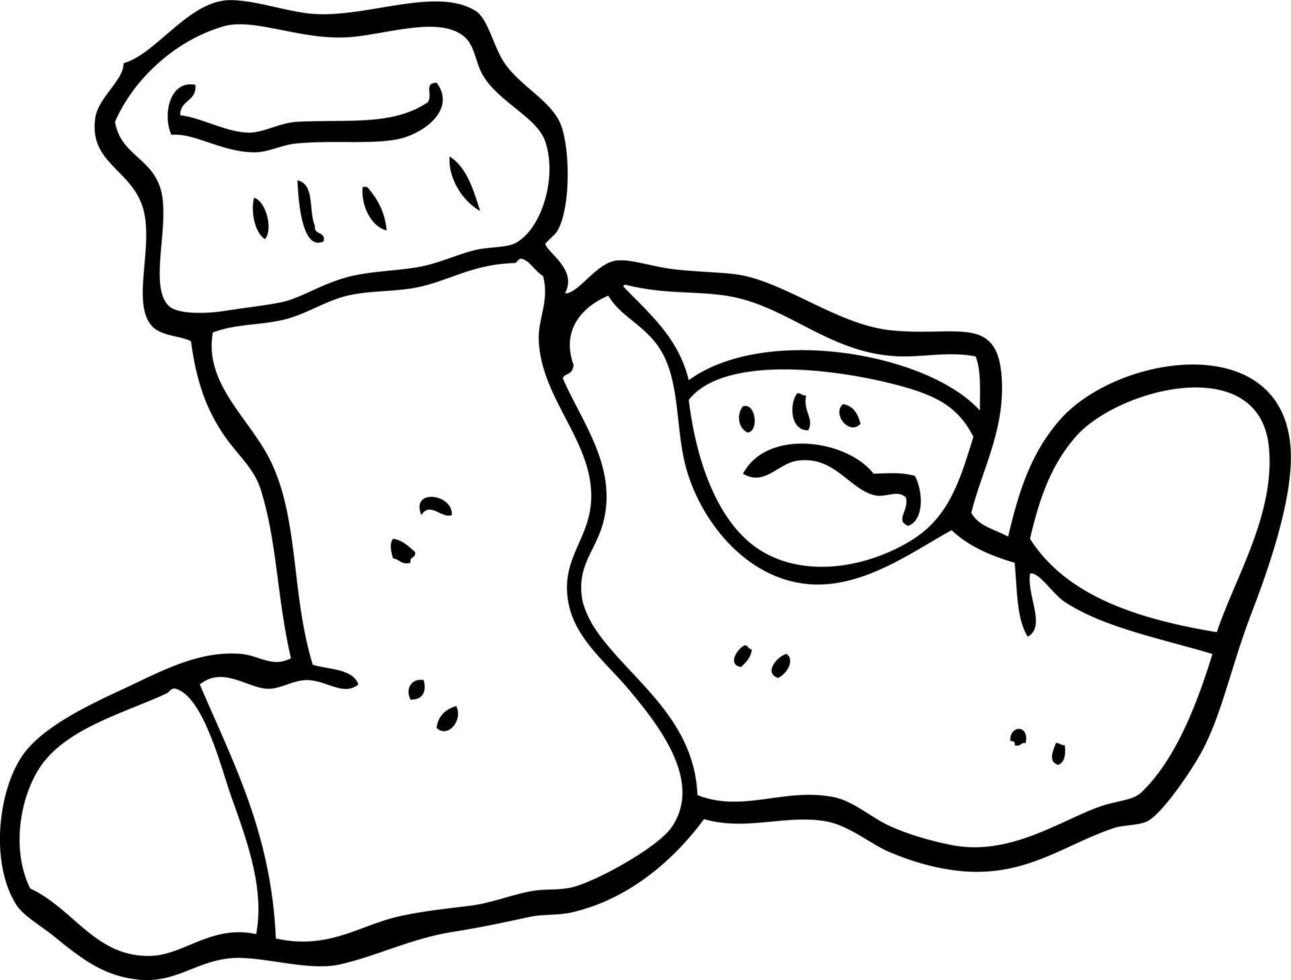 schwarz-weiße Cartoon-Socken vektor